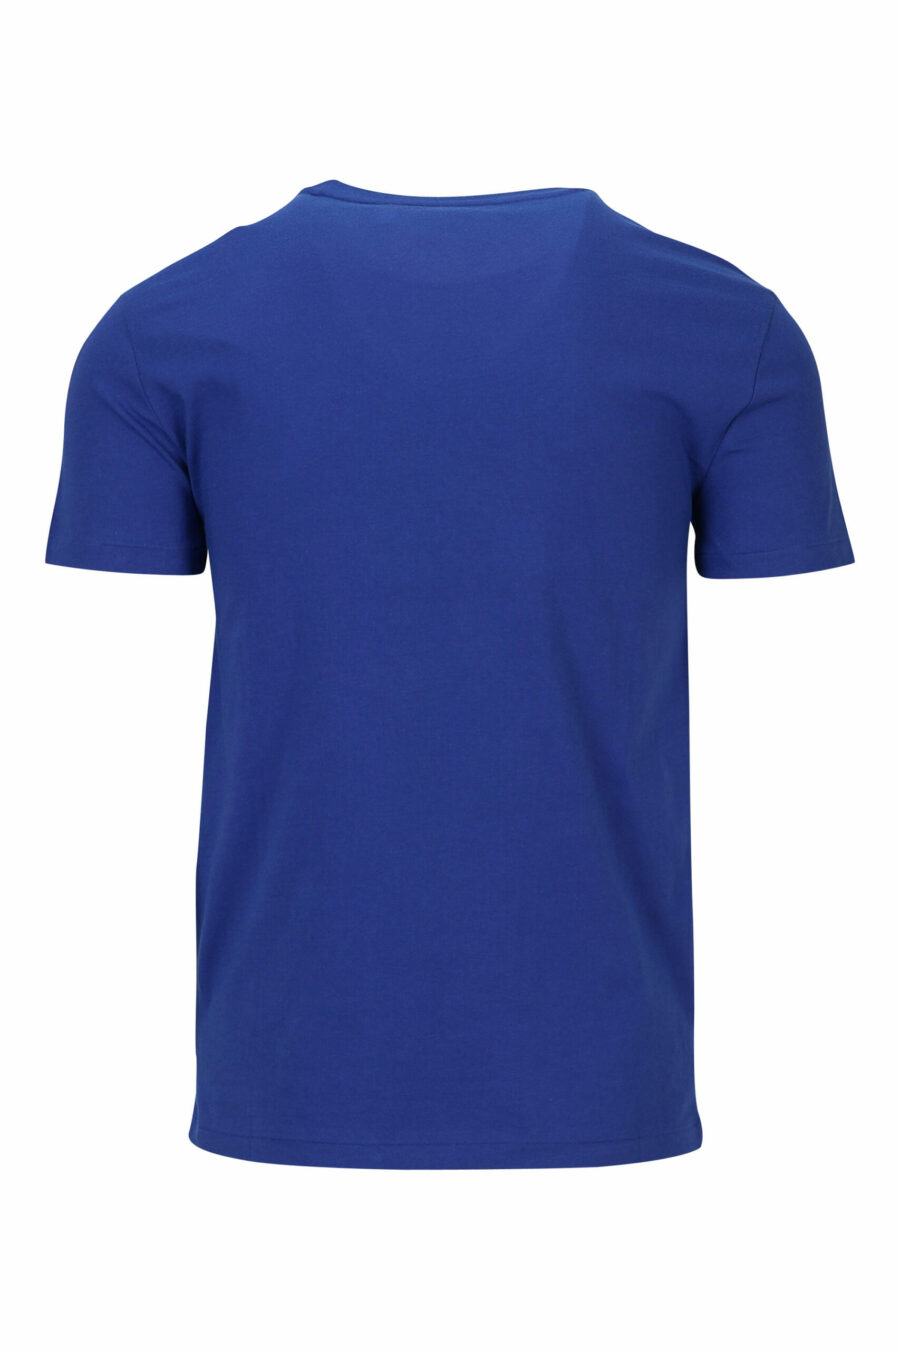 Camiseta azul con minilogo "polo" - 3616535835214 1 scaled